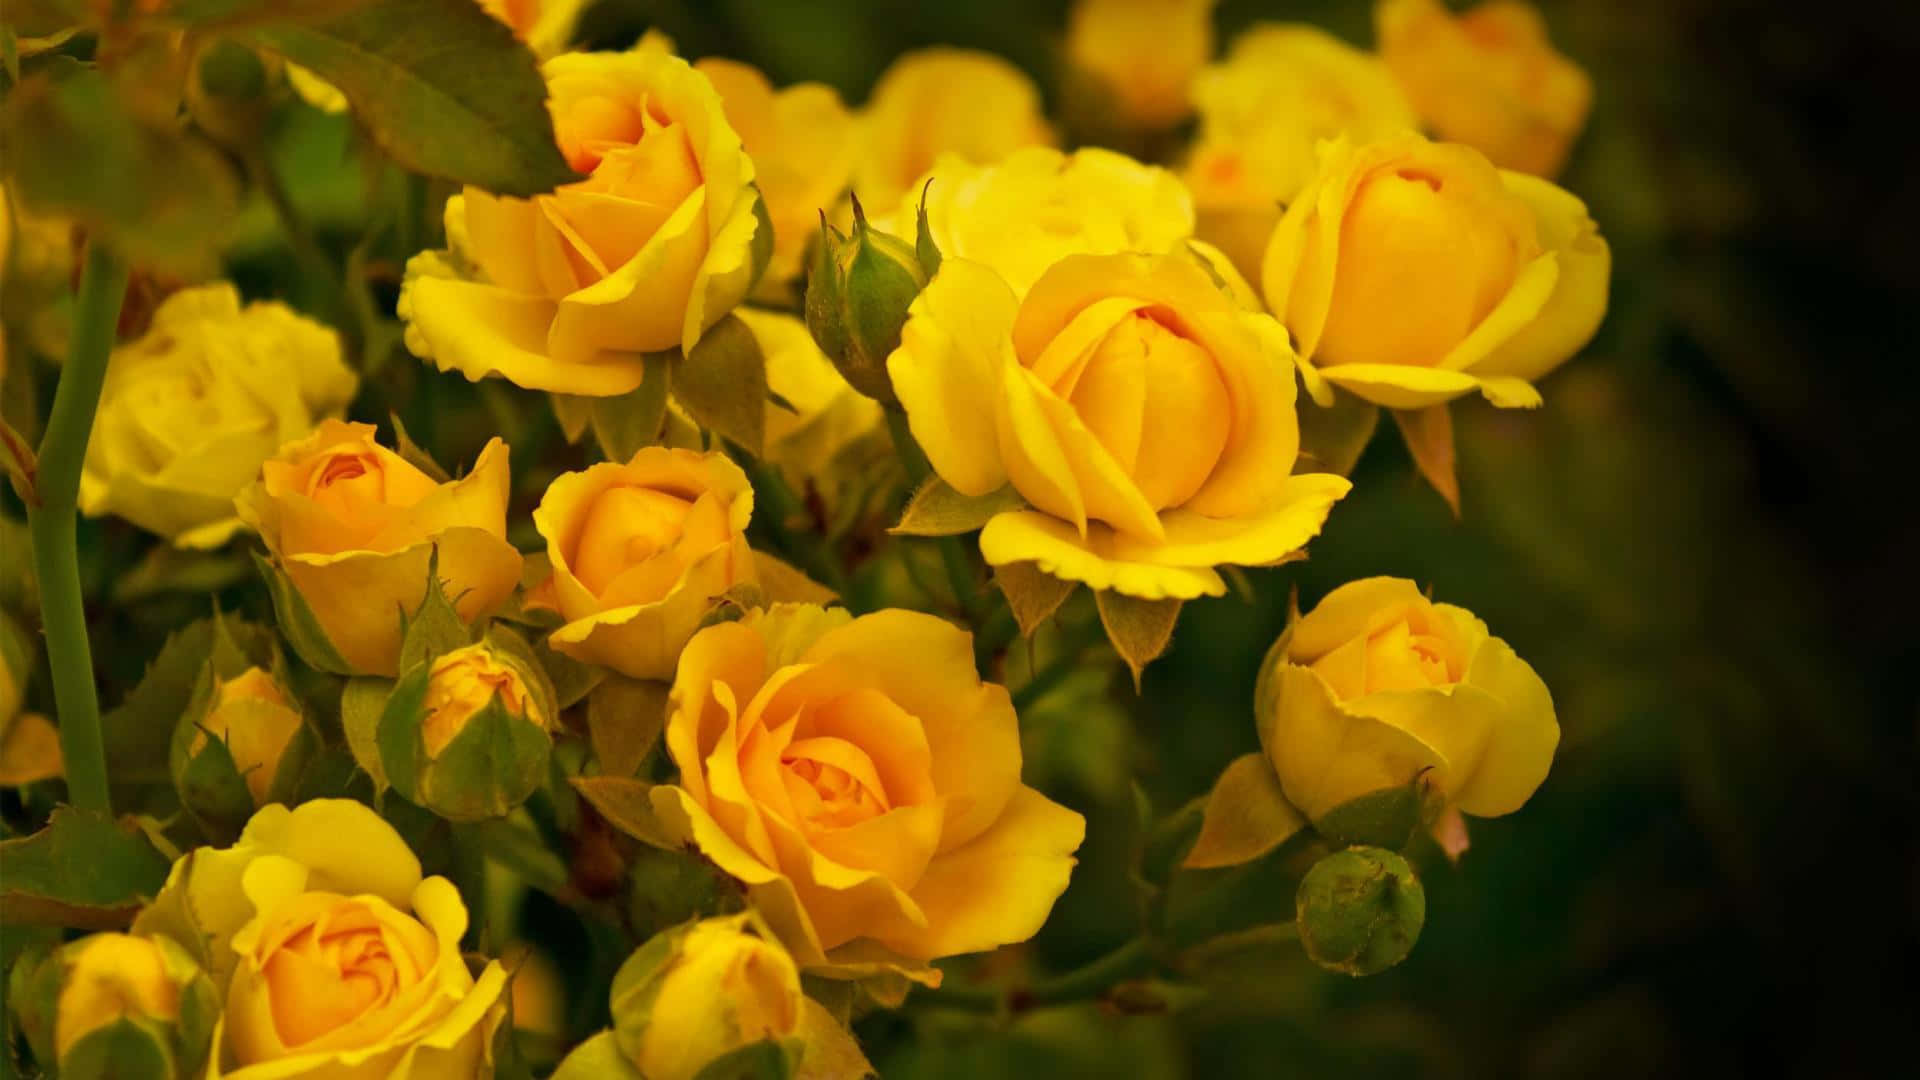 Fotode Un Arreglo De Flores Amarillas De Rosas De Jardín.